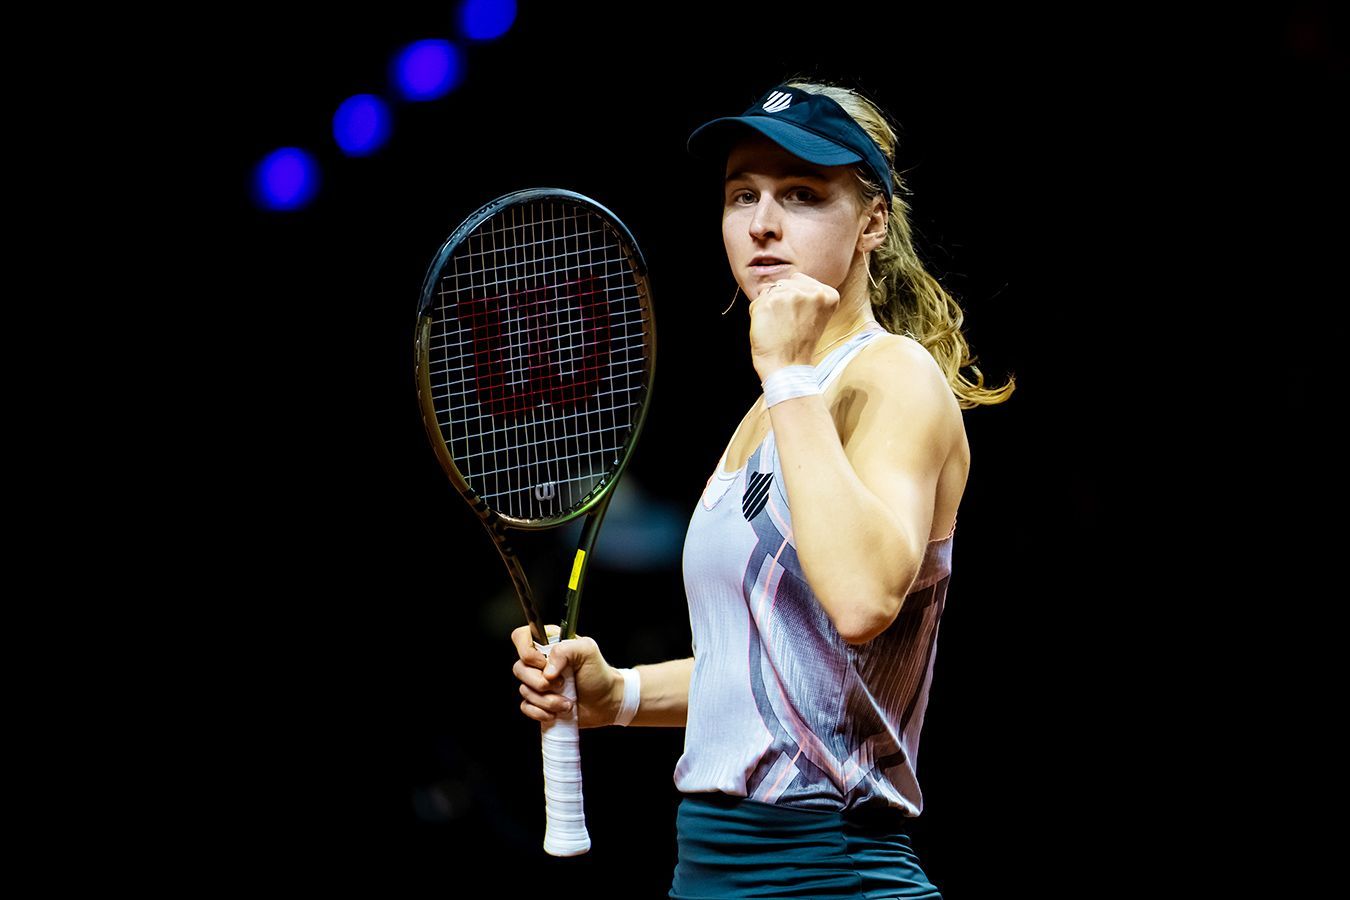 Людмила Самсонова вышла в четвертьфинал турнира в Страсбурге, одолев Лейлу Фернандес